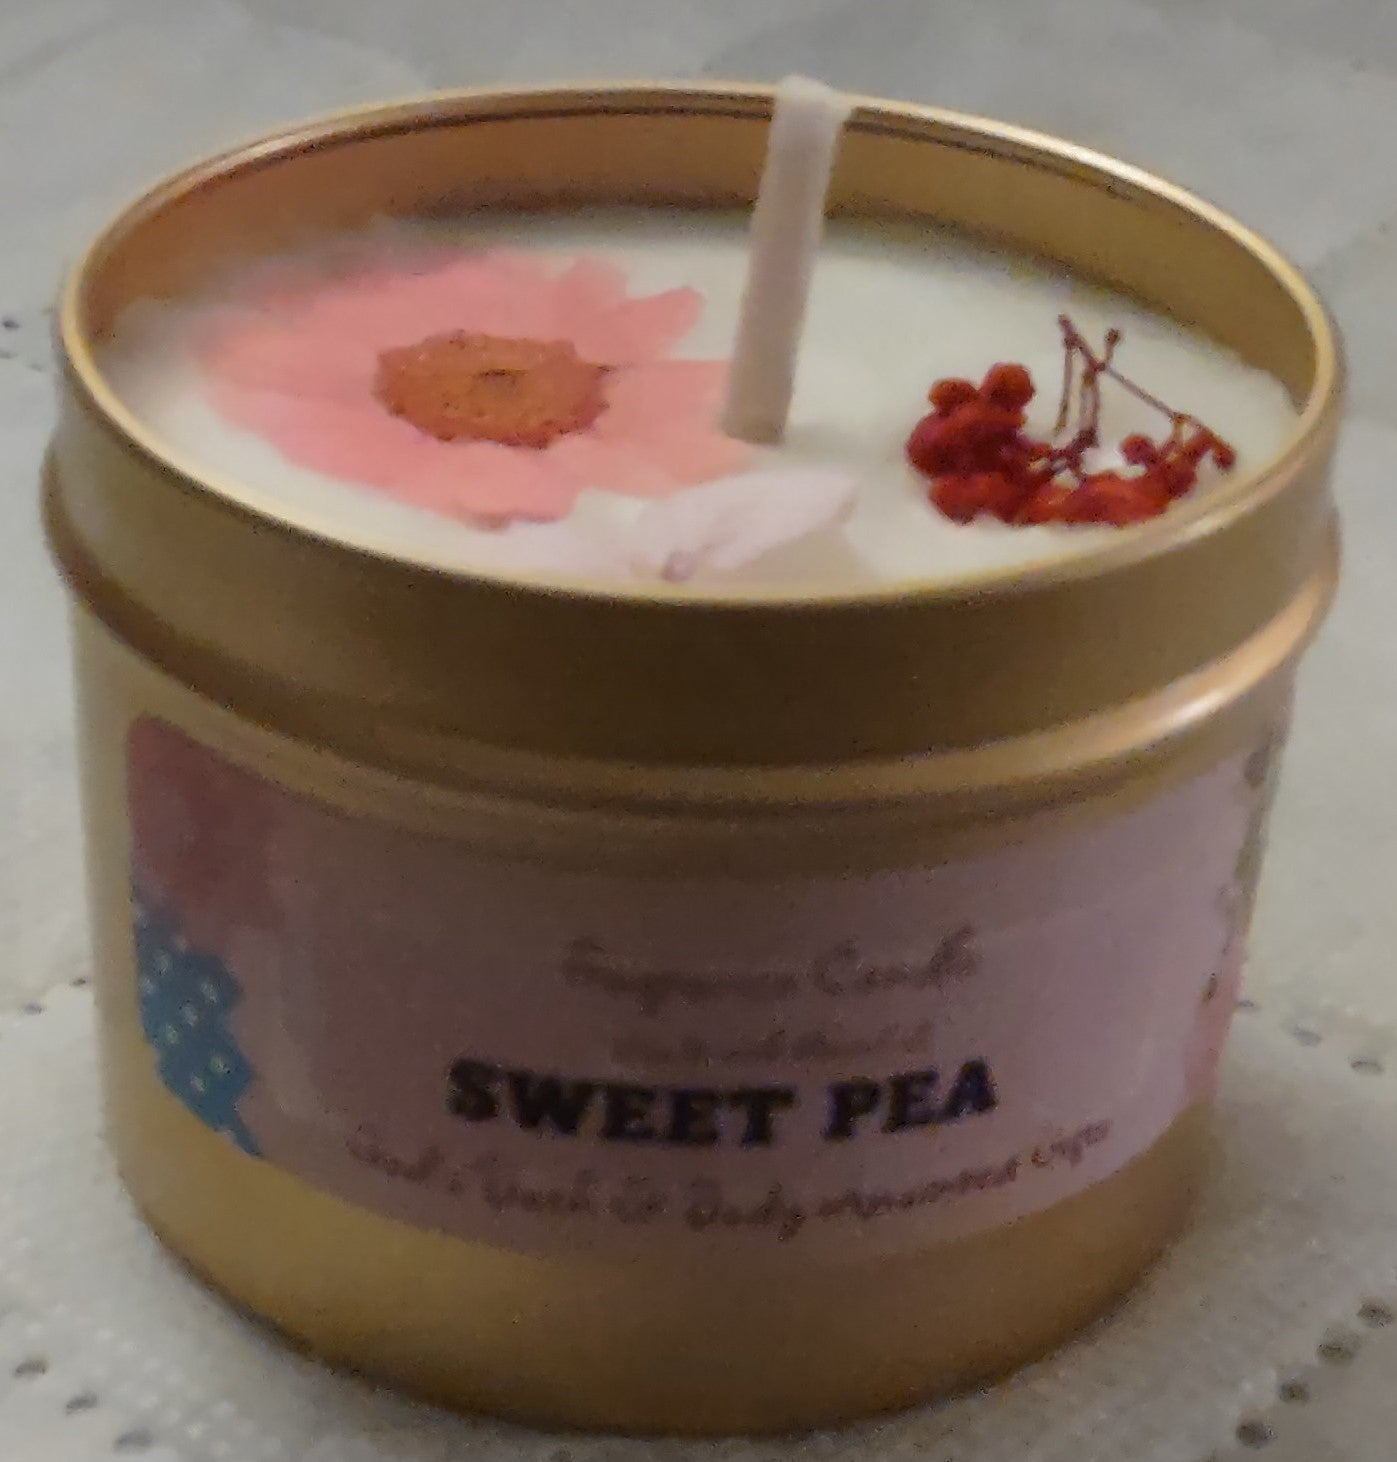 Sweet Pea - 4oz metallic tin can with lid